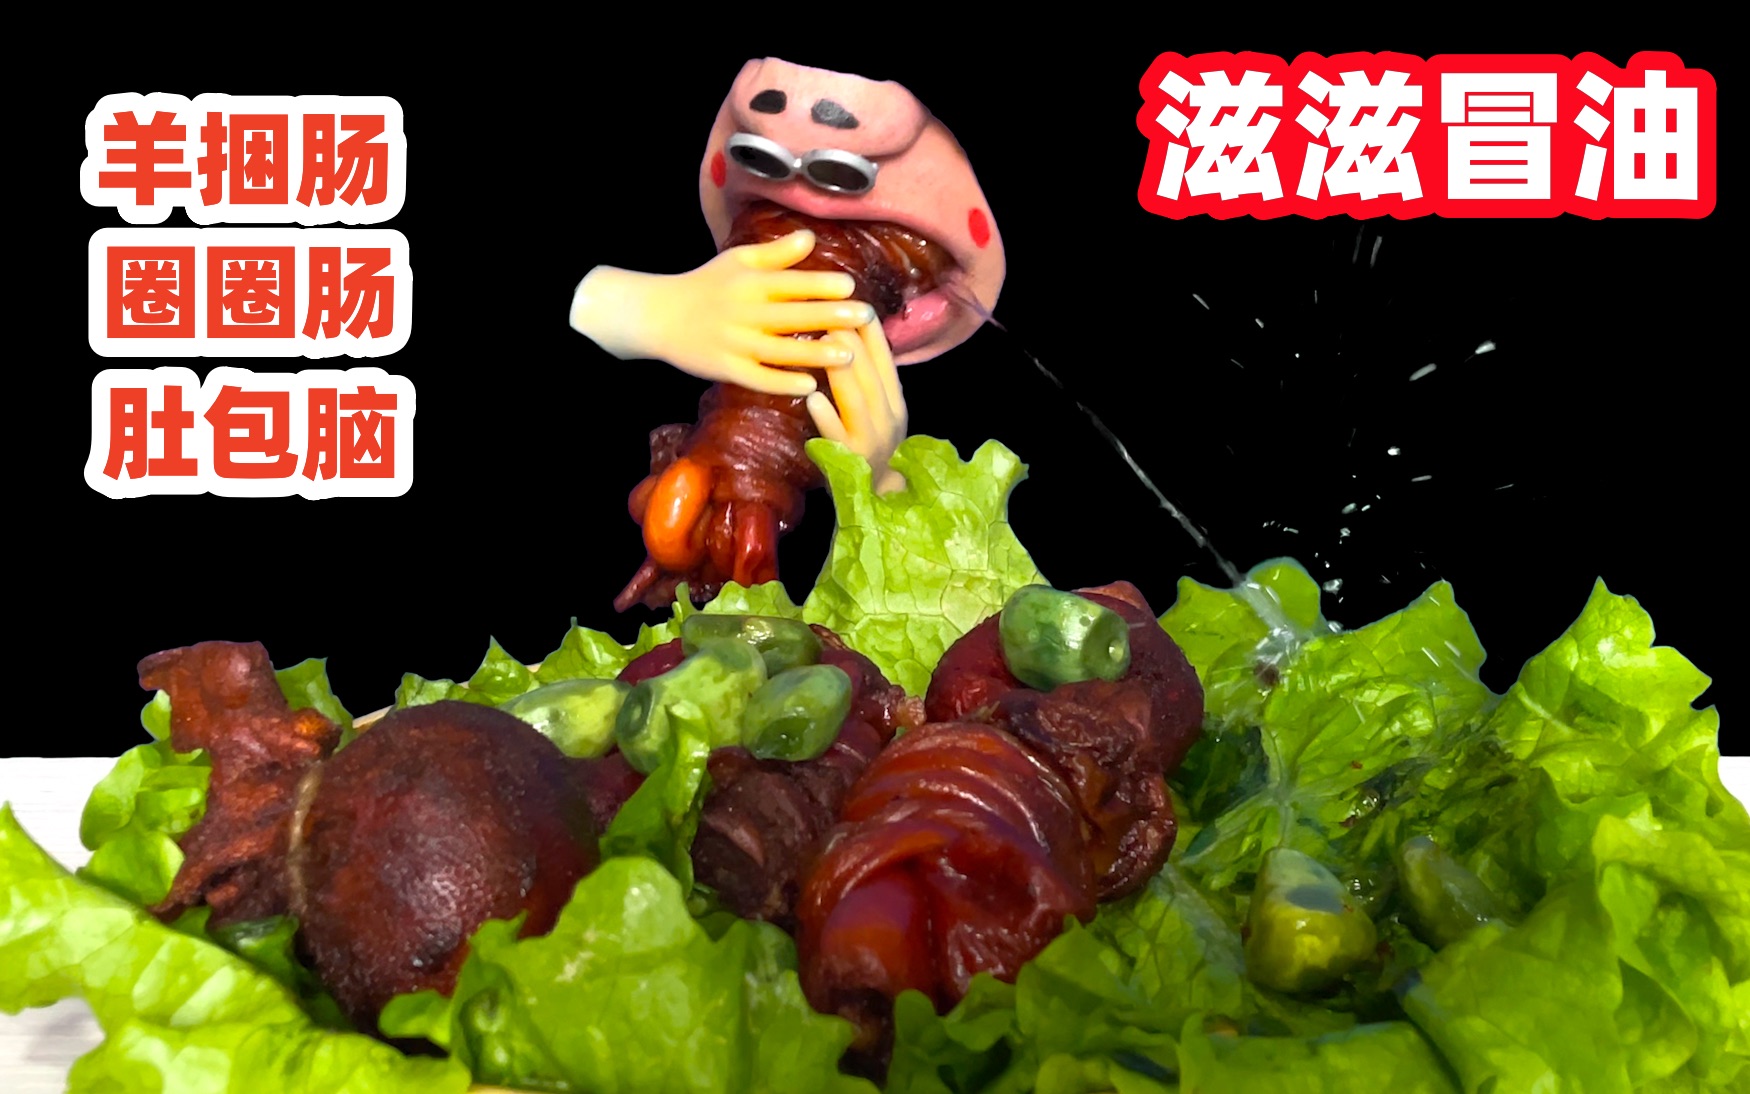 【剪吞咽】Hongyu 牛肠 辣酱鸡爪蘑菇圈圈肠-兜圈羽毛-兜圈羽毛-哔哩哔哩视频